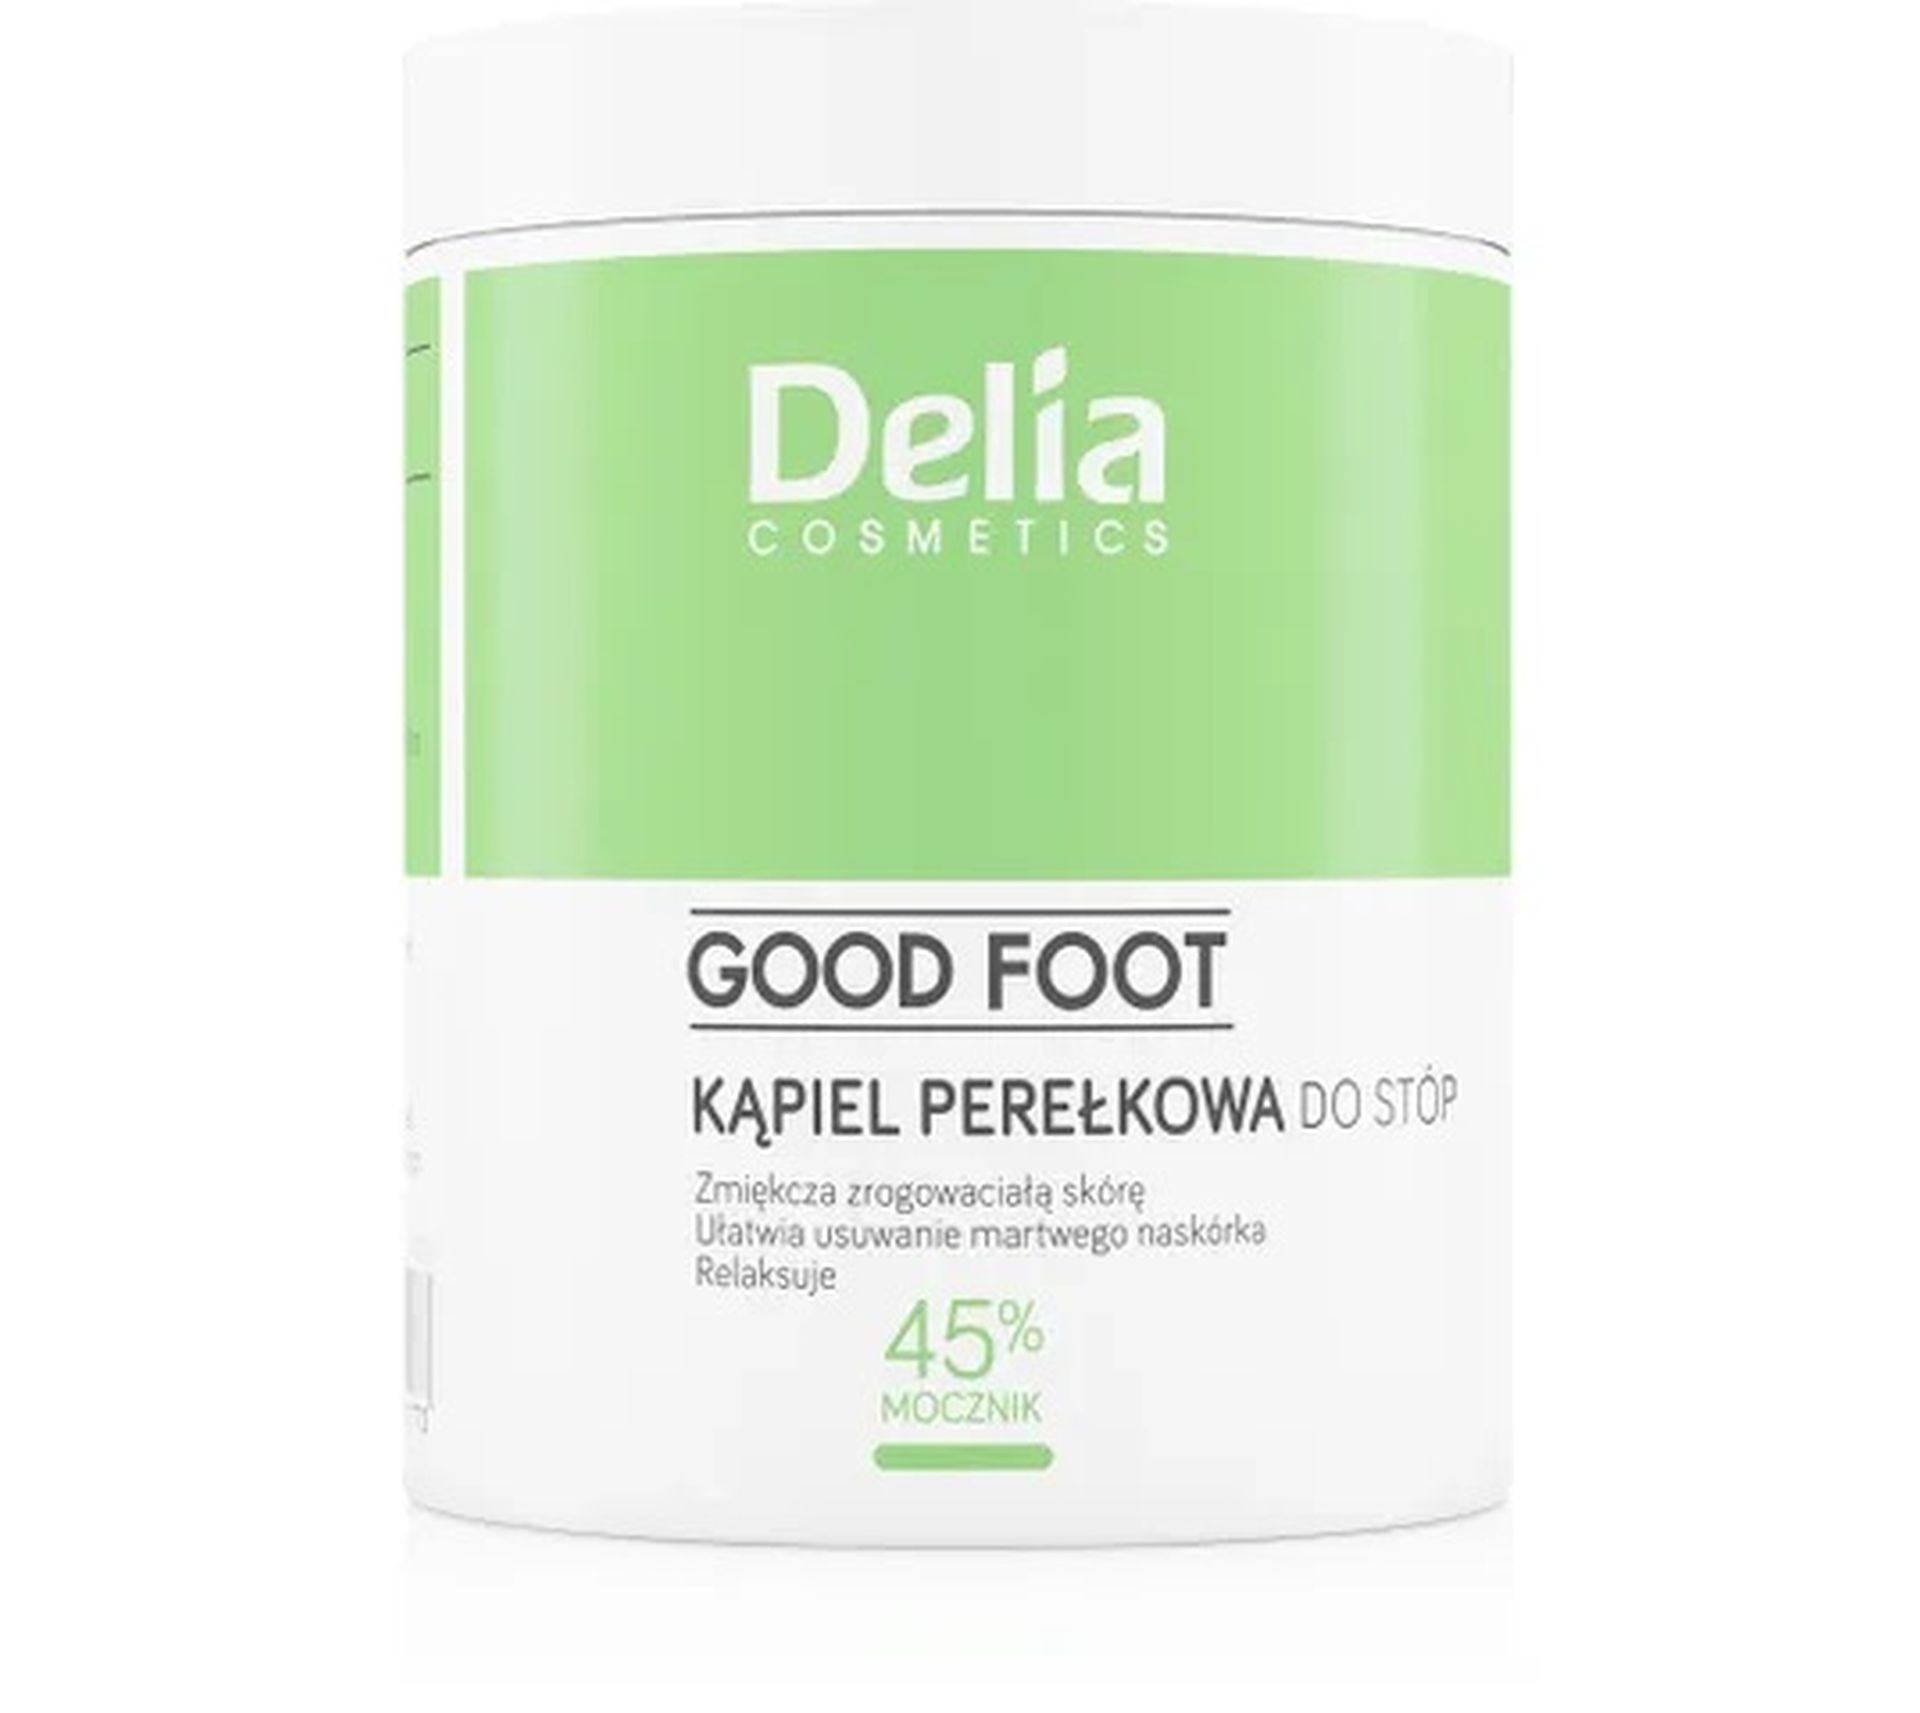 Delia Cosmetics Good Foot Kąpiel perełkowa do stóp - 45% Mocznik (250 g)